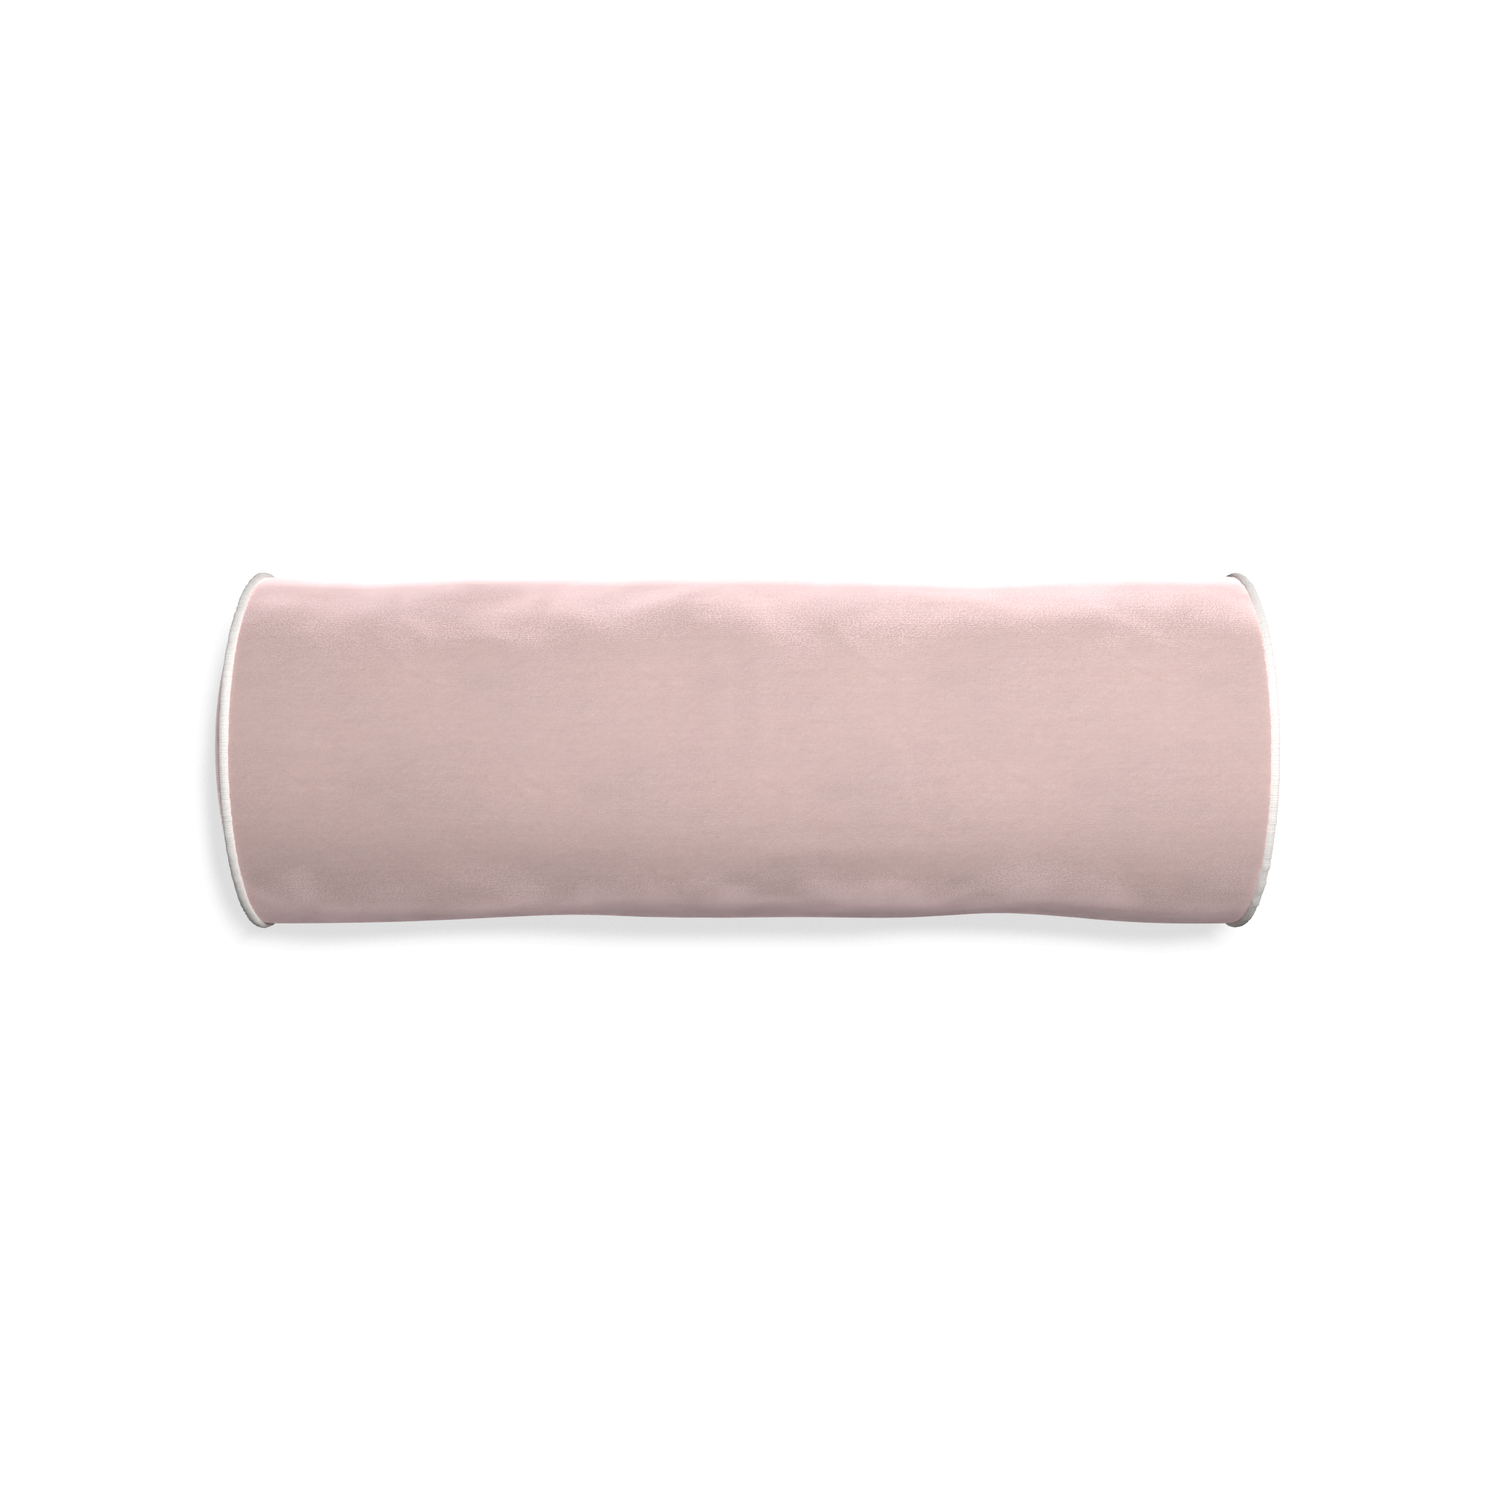 Bolster rose velvet custom pillow with snow piping on white background